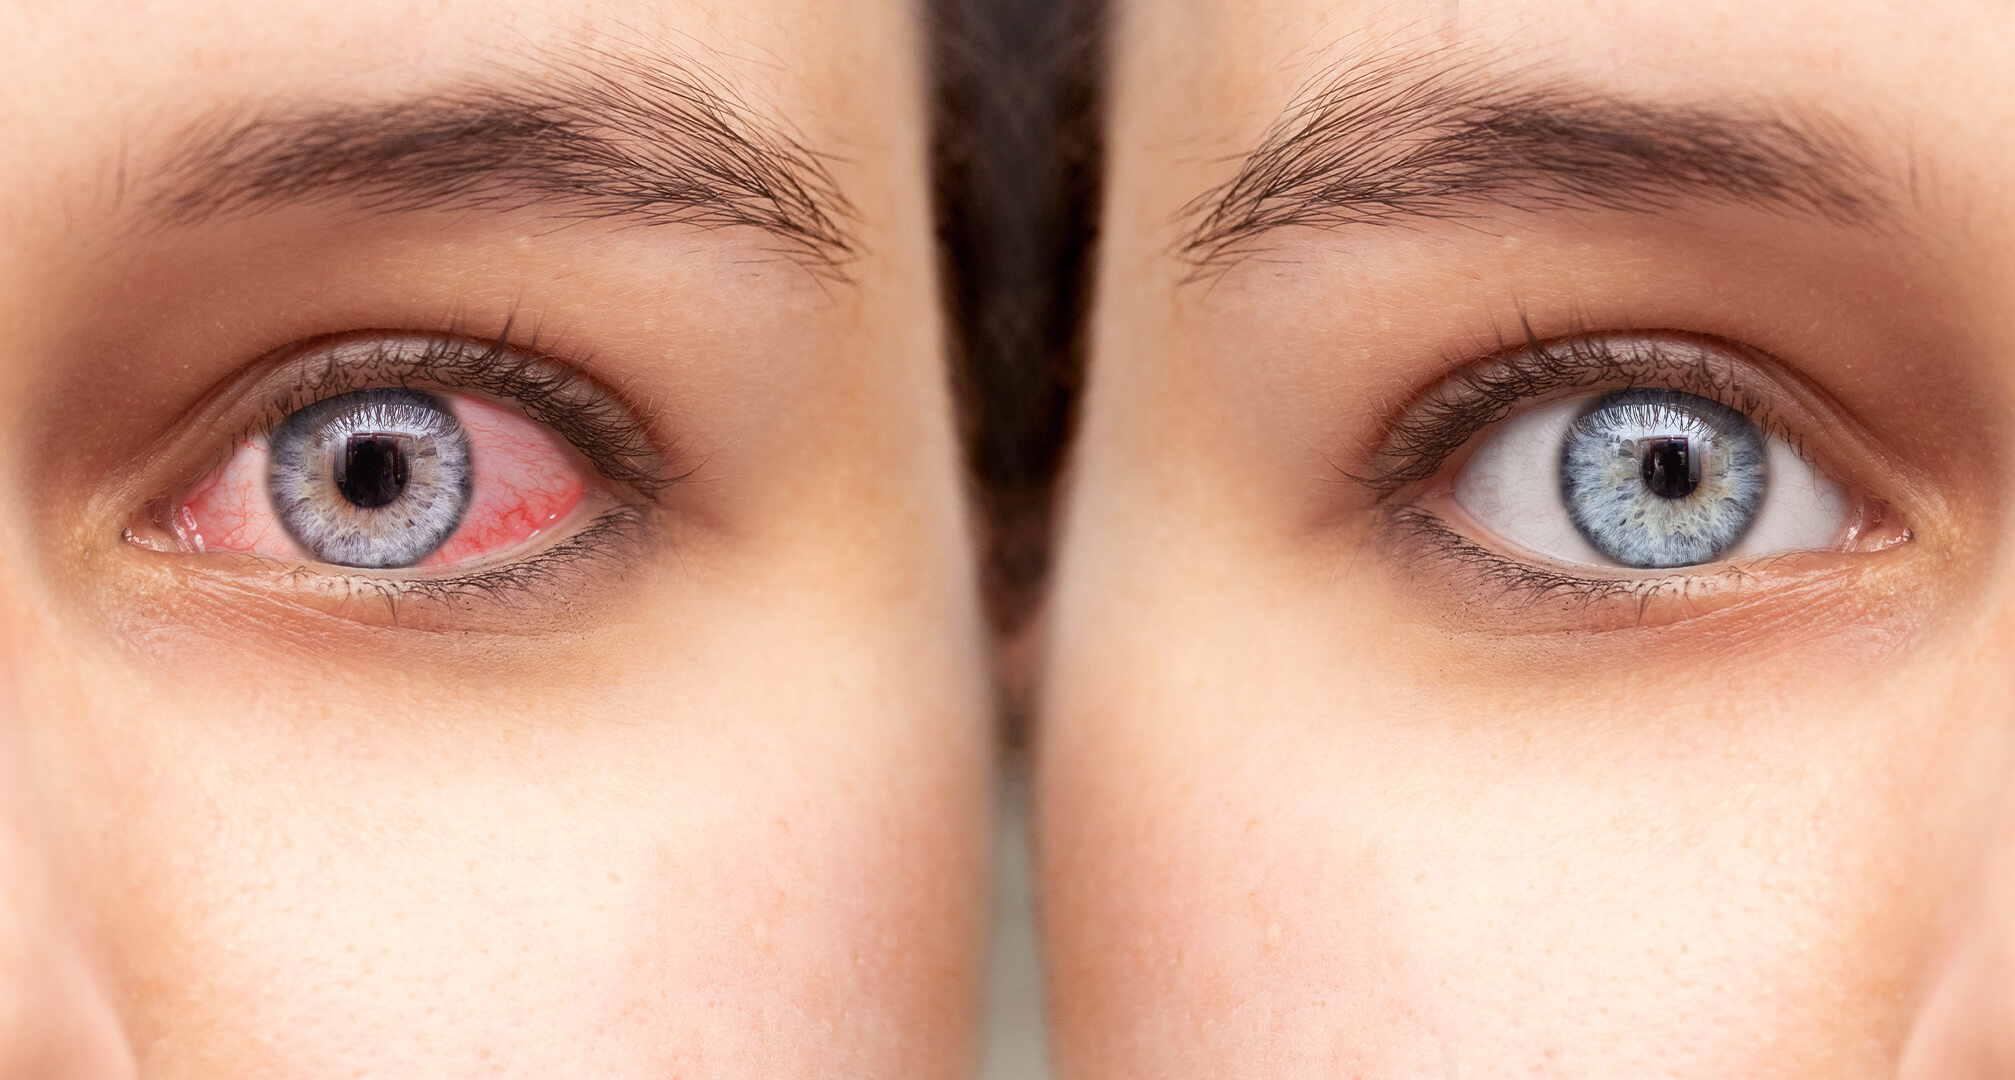 Nahaufnahme zweier Augen nebeneinander, ein rotes trockenes Auge links und ein gesundes Auge rechts